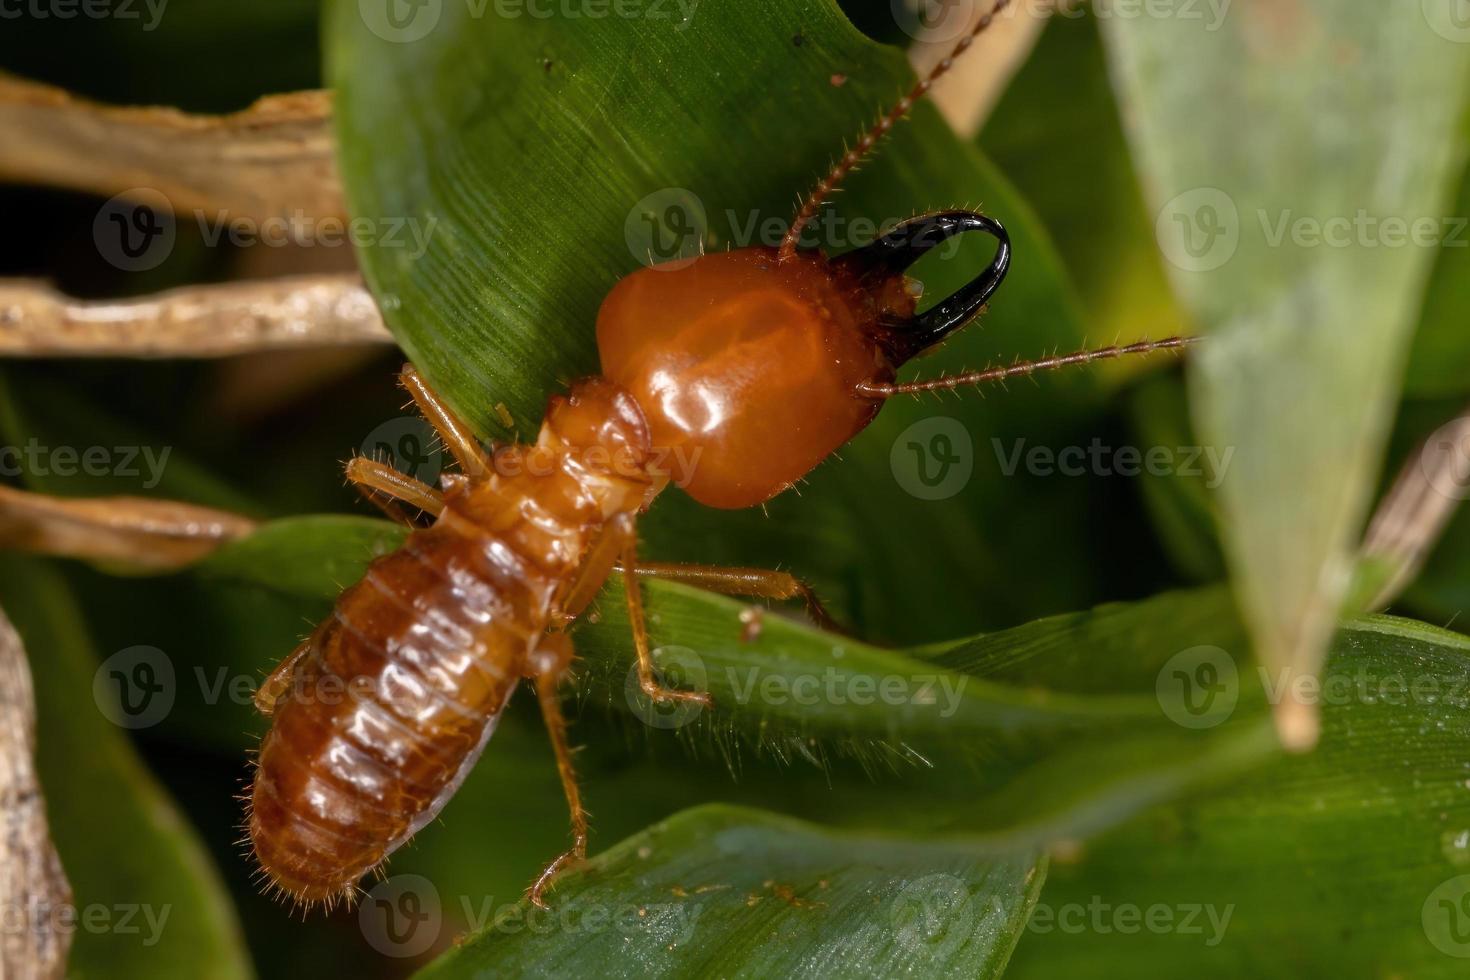 termite à museau adulte photo